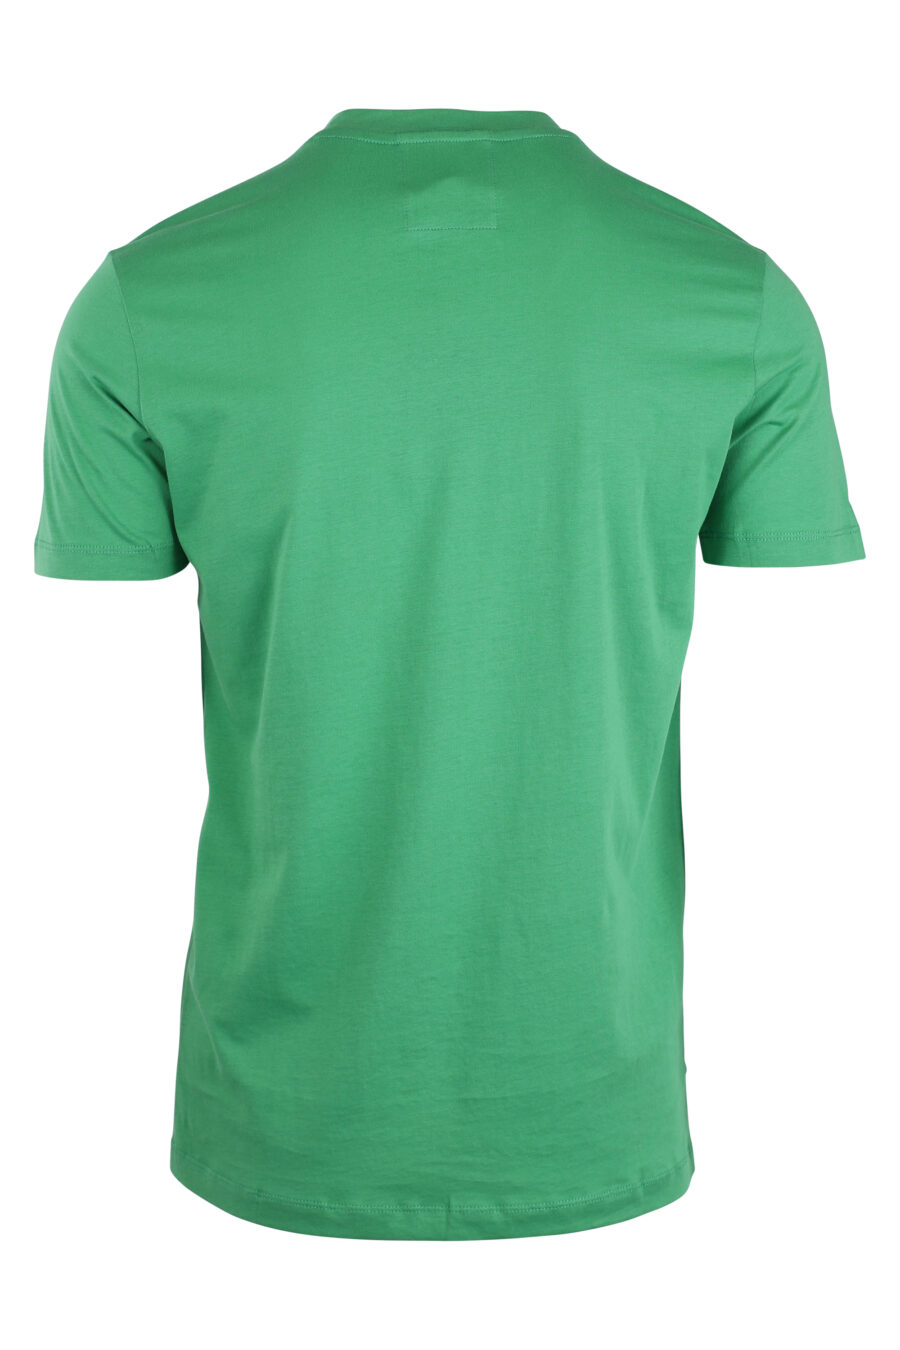 T-shirt verde com o logótipo da águia - IMG 4330